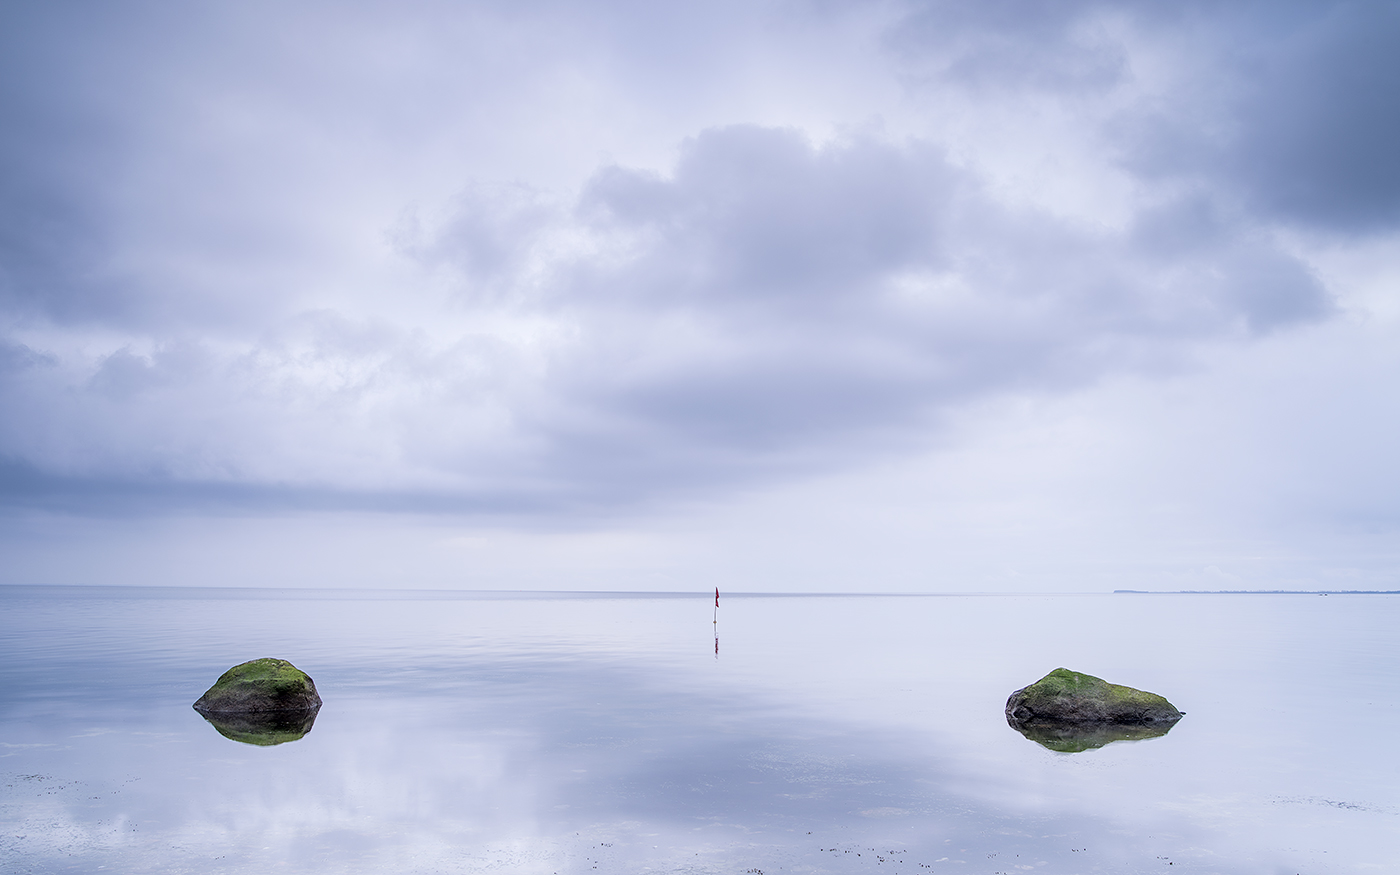 Tage am Meer, Lighthouse Stefan Mayr Fotografie